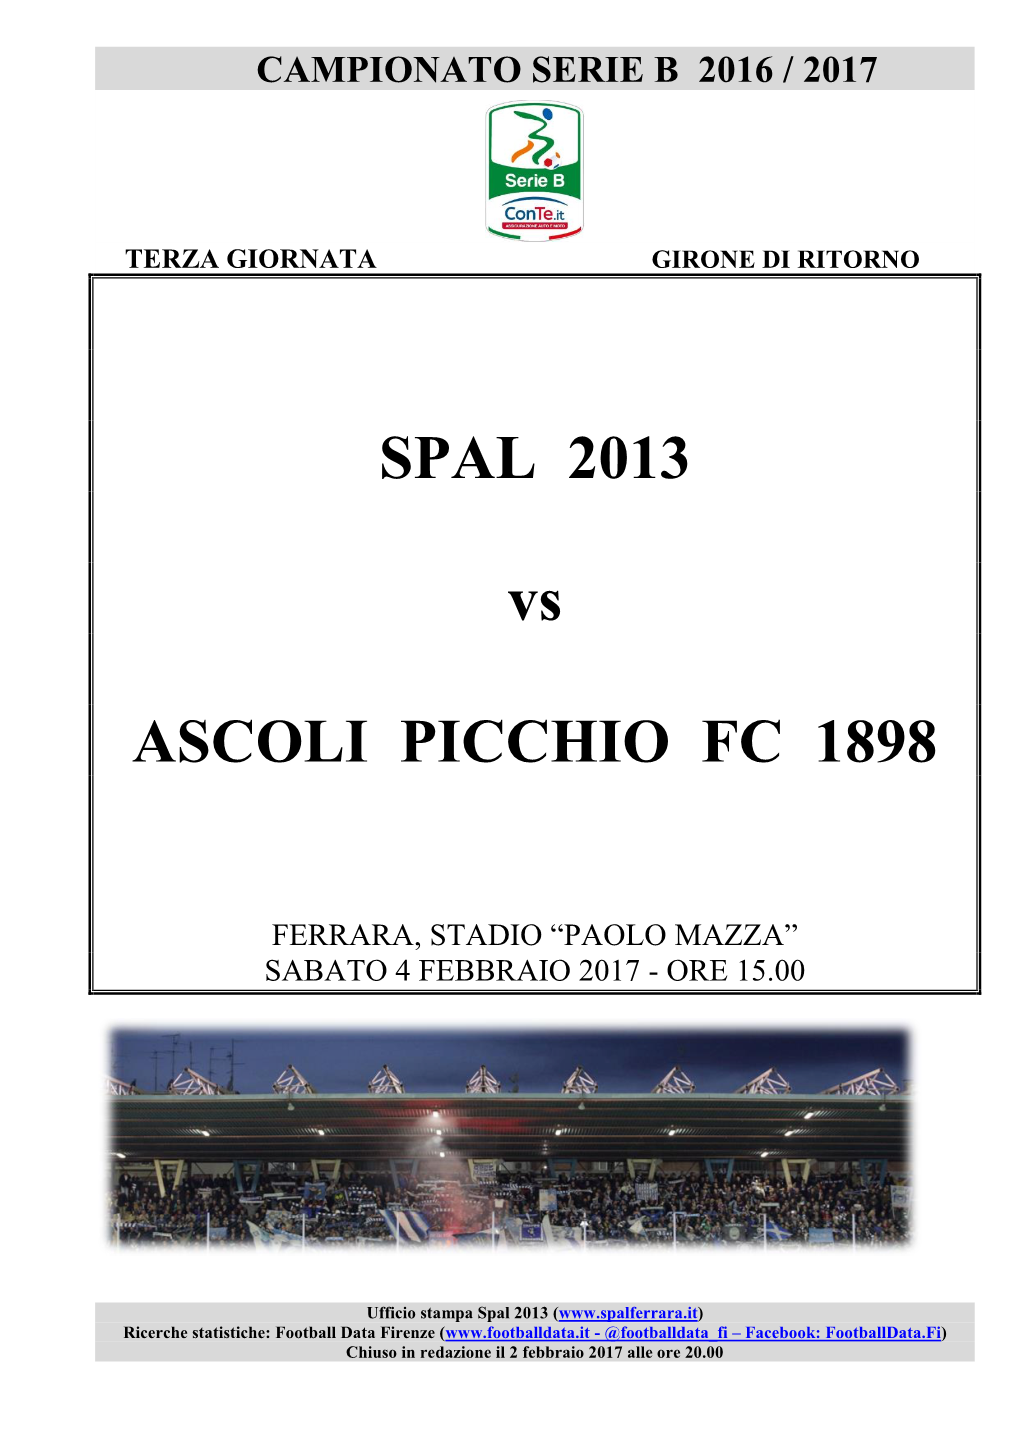 SPAL 2013 Vs ASCOLI PICCHIO FC 1898